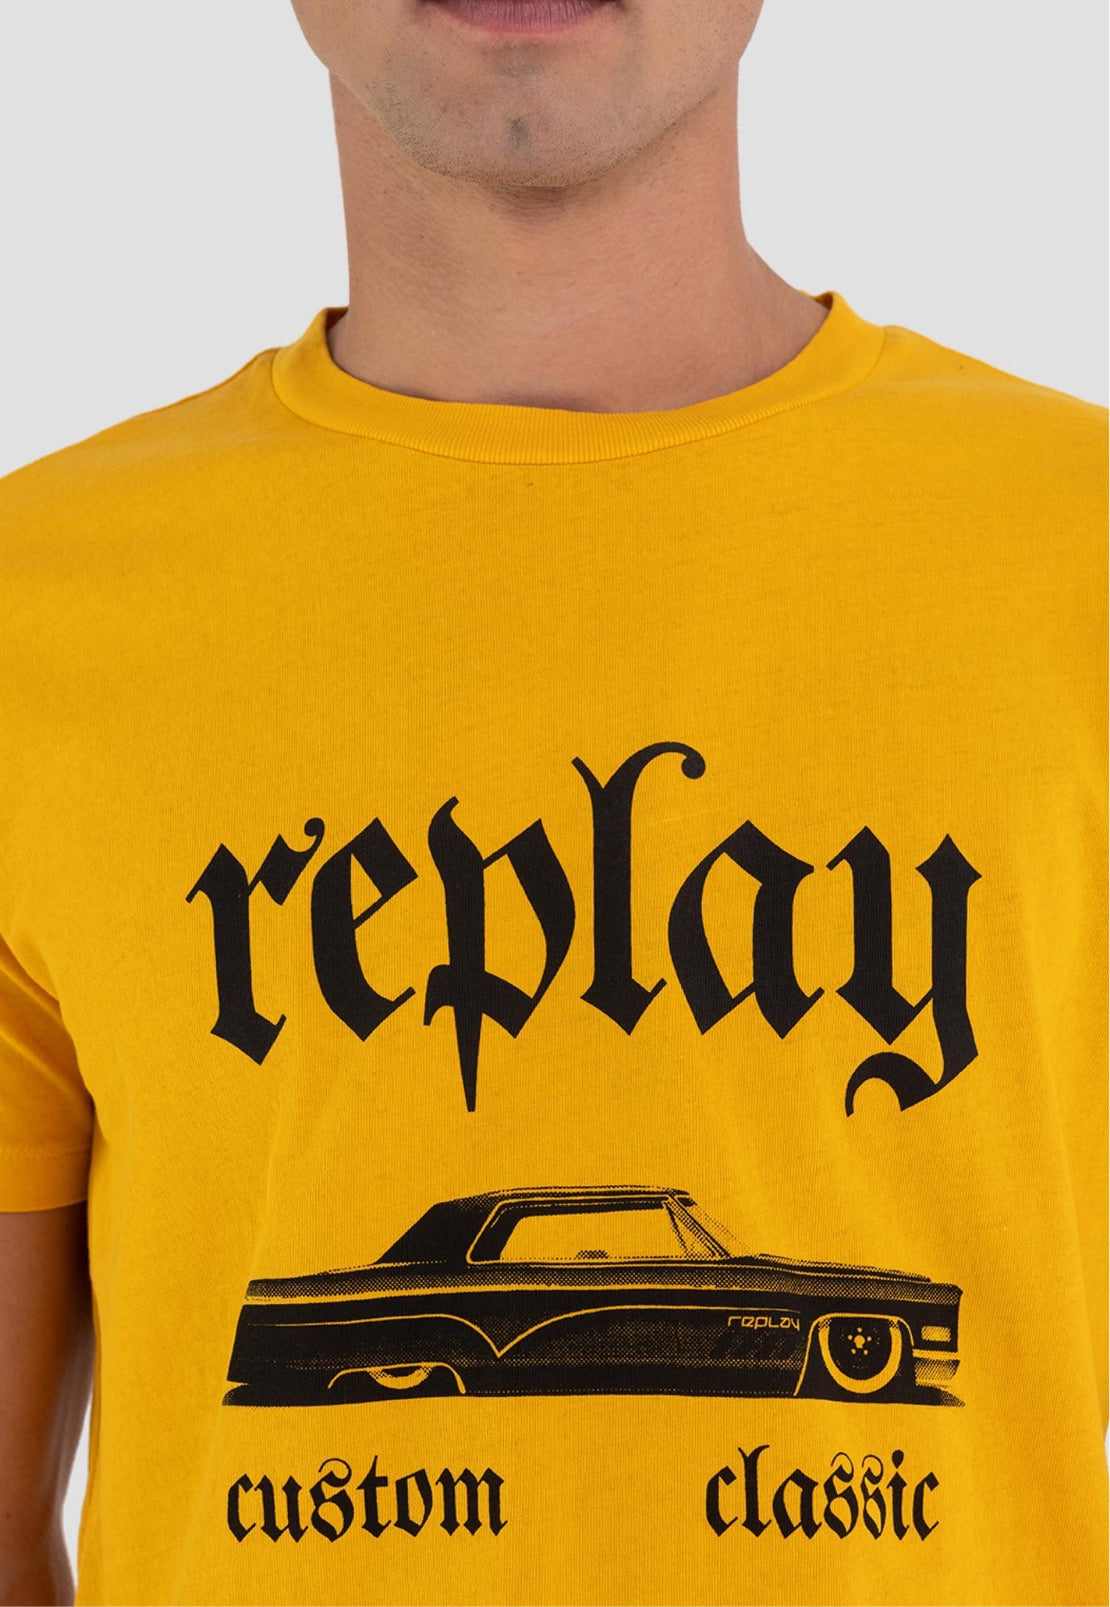 Camiseta Replay